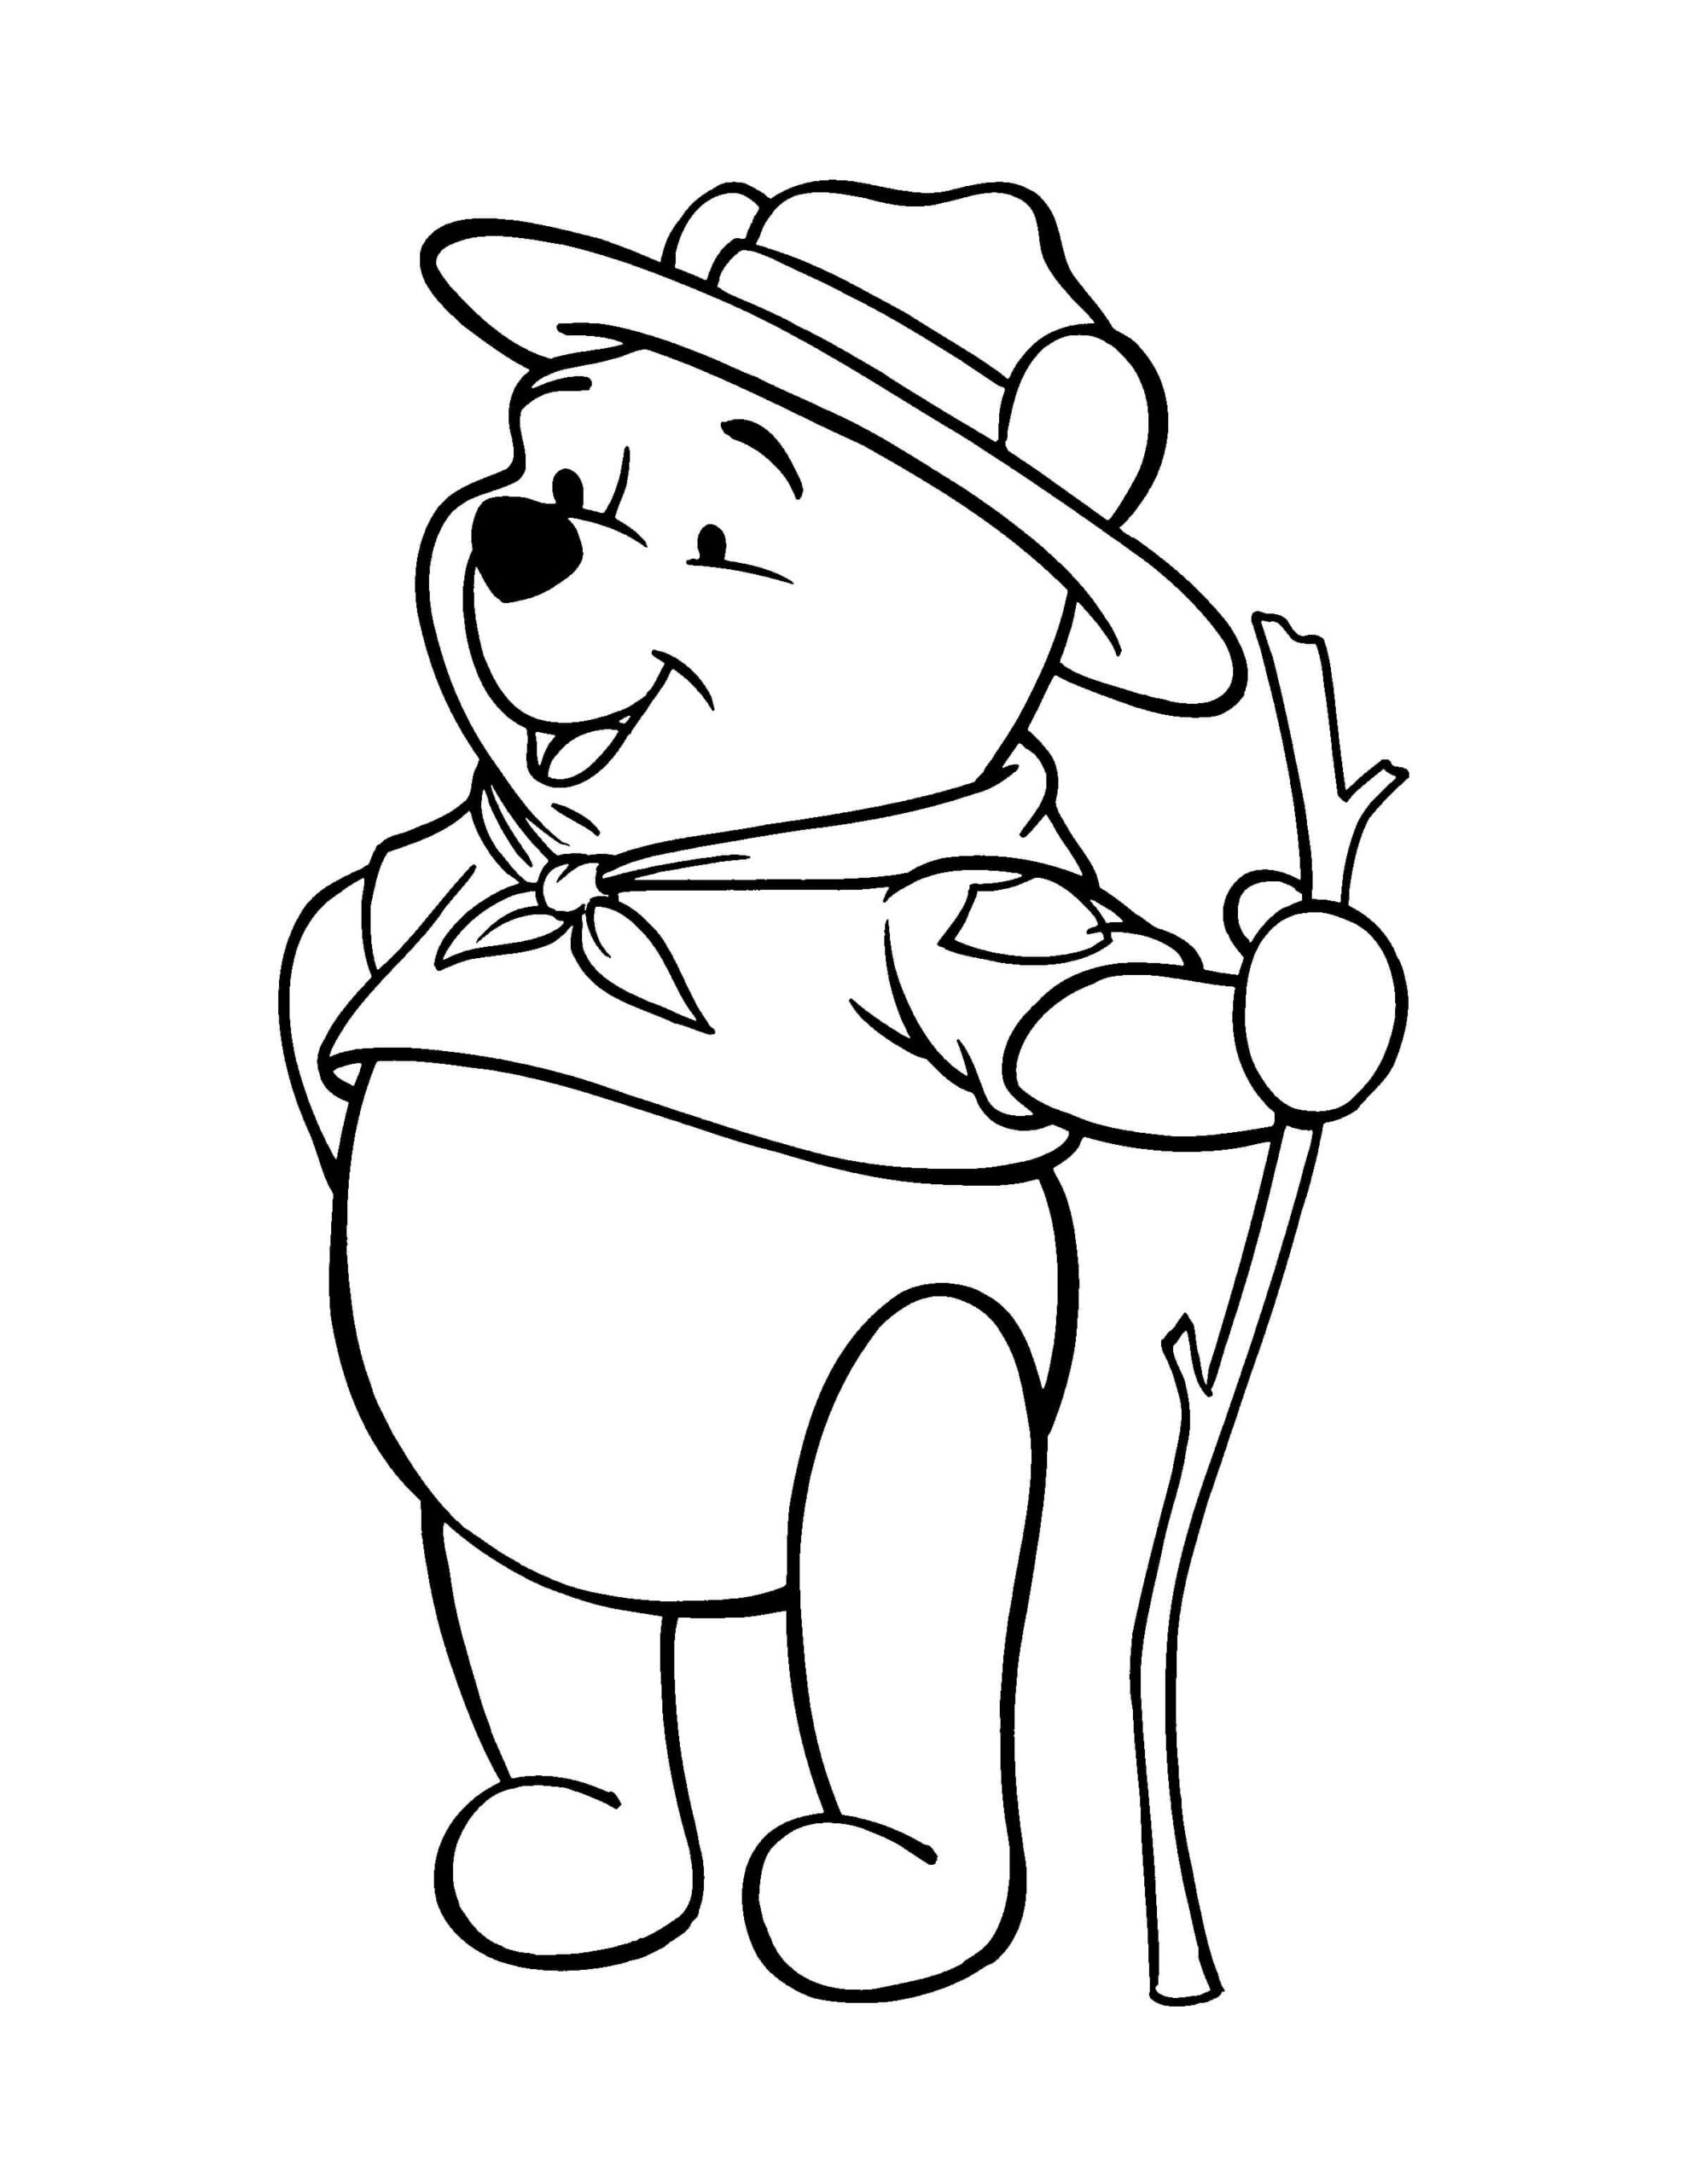 Dibujos de Winnie de Pooh con Rama de Árbol para colorear